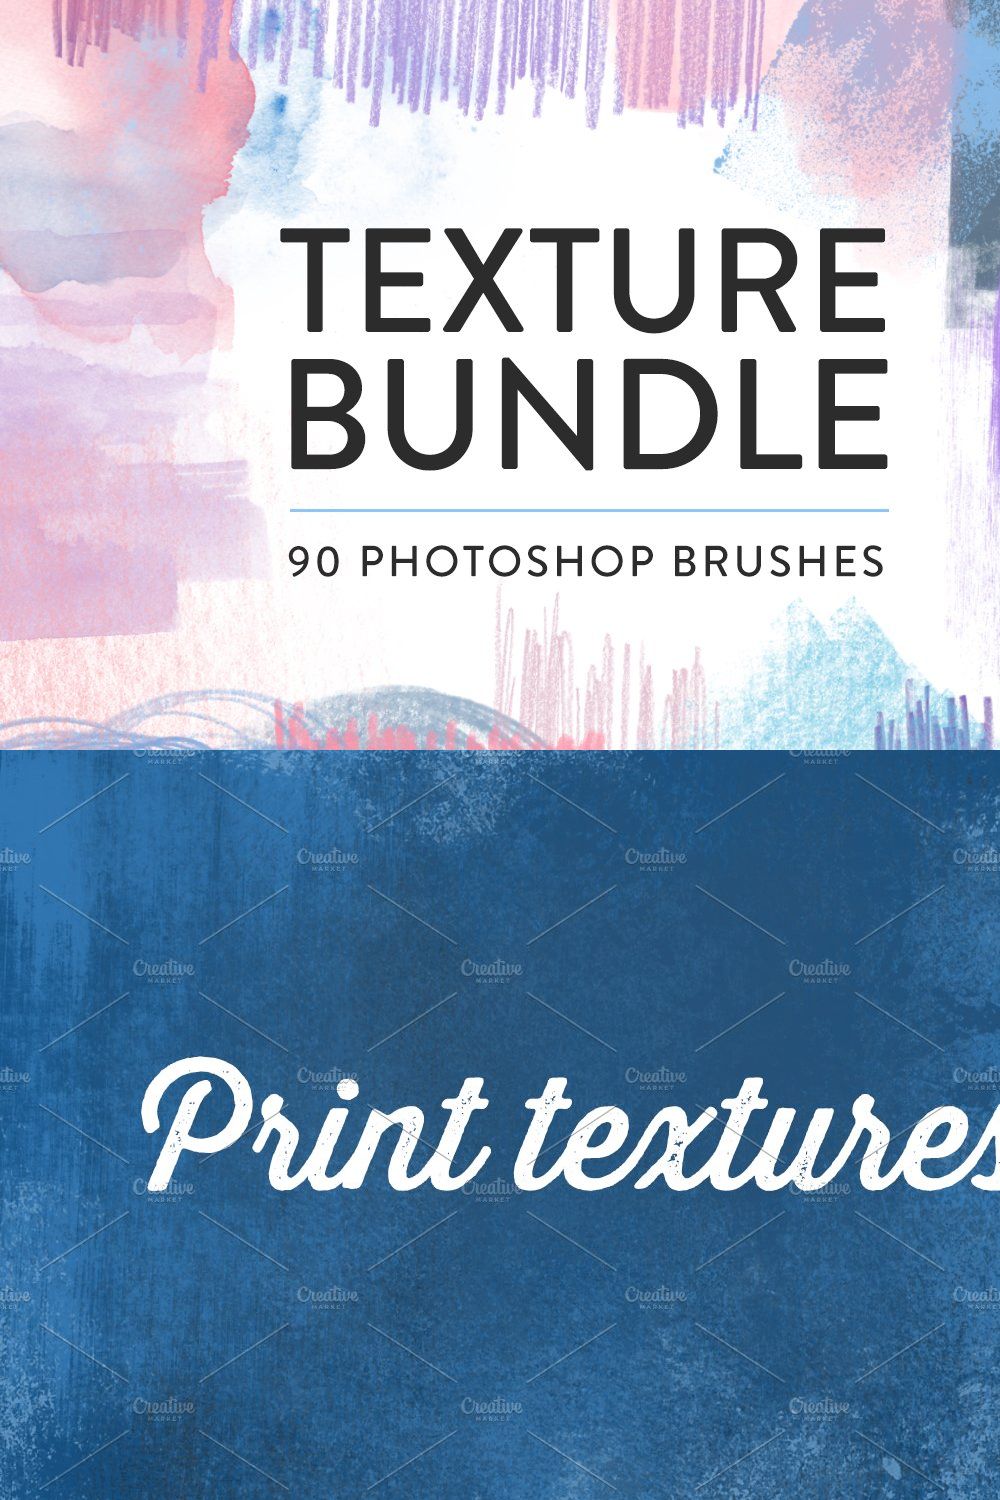 Texture Photoshop brush bundle pinterest preview image.